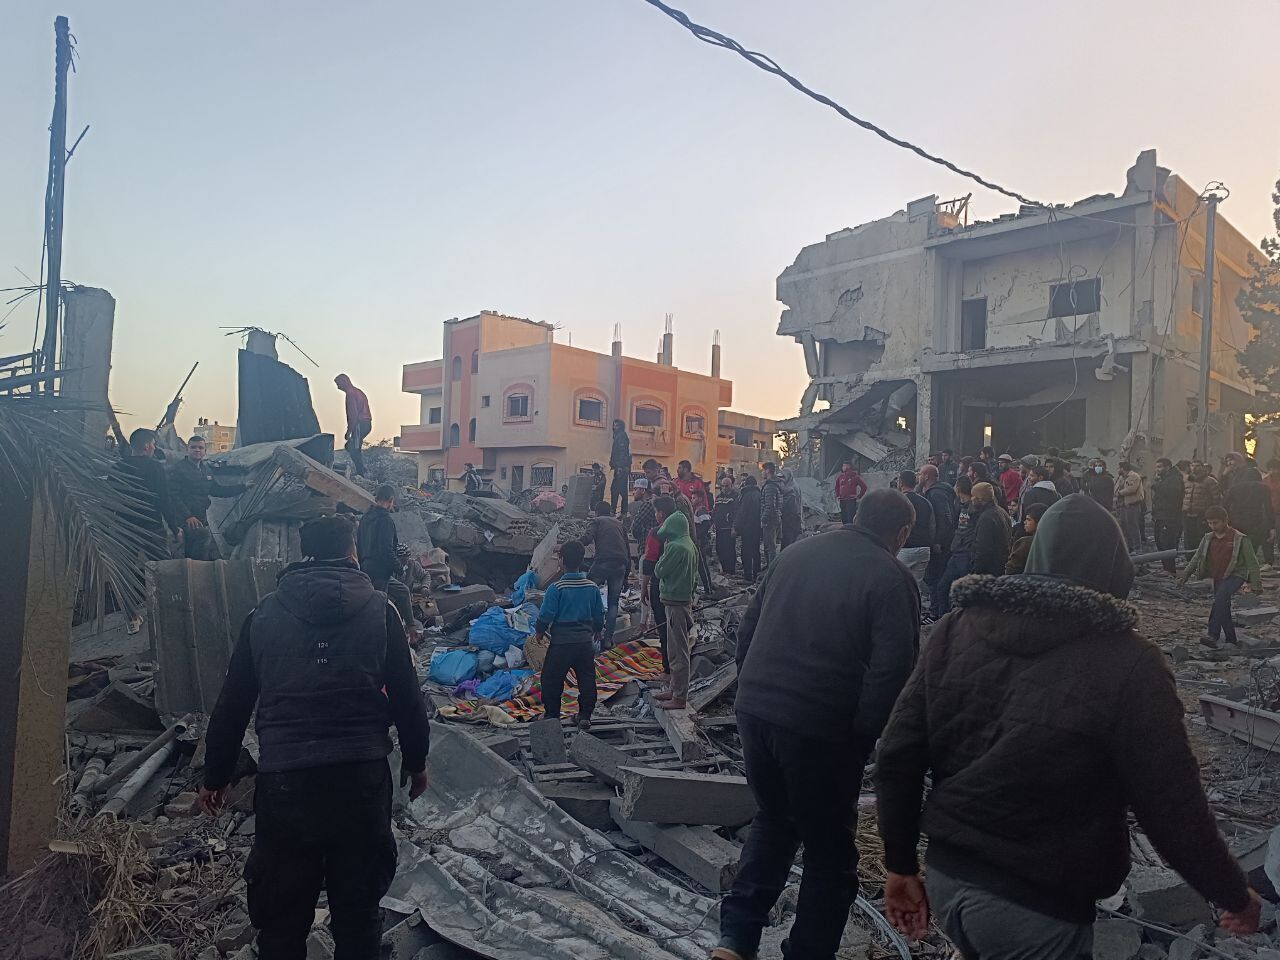 52 شهيدا في القصف الإسرائيلي المتواصل على منازل بالمنطقة الوسطى من قطاع غزة منذ مساء أمس